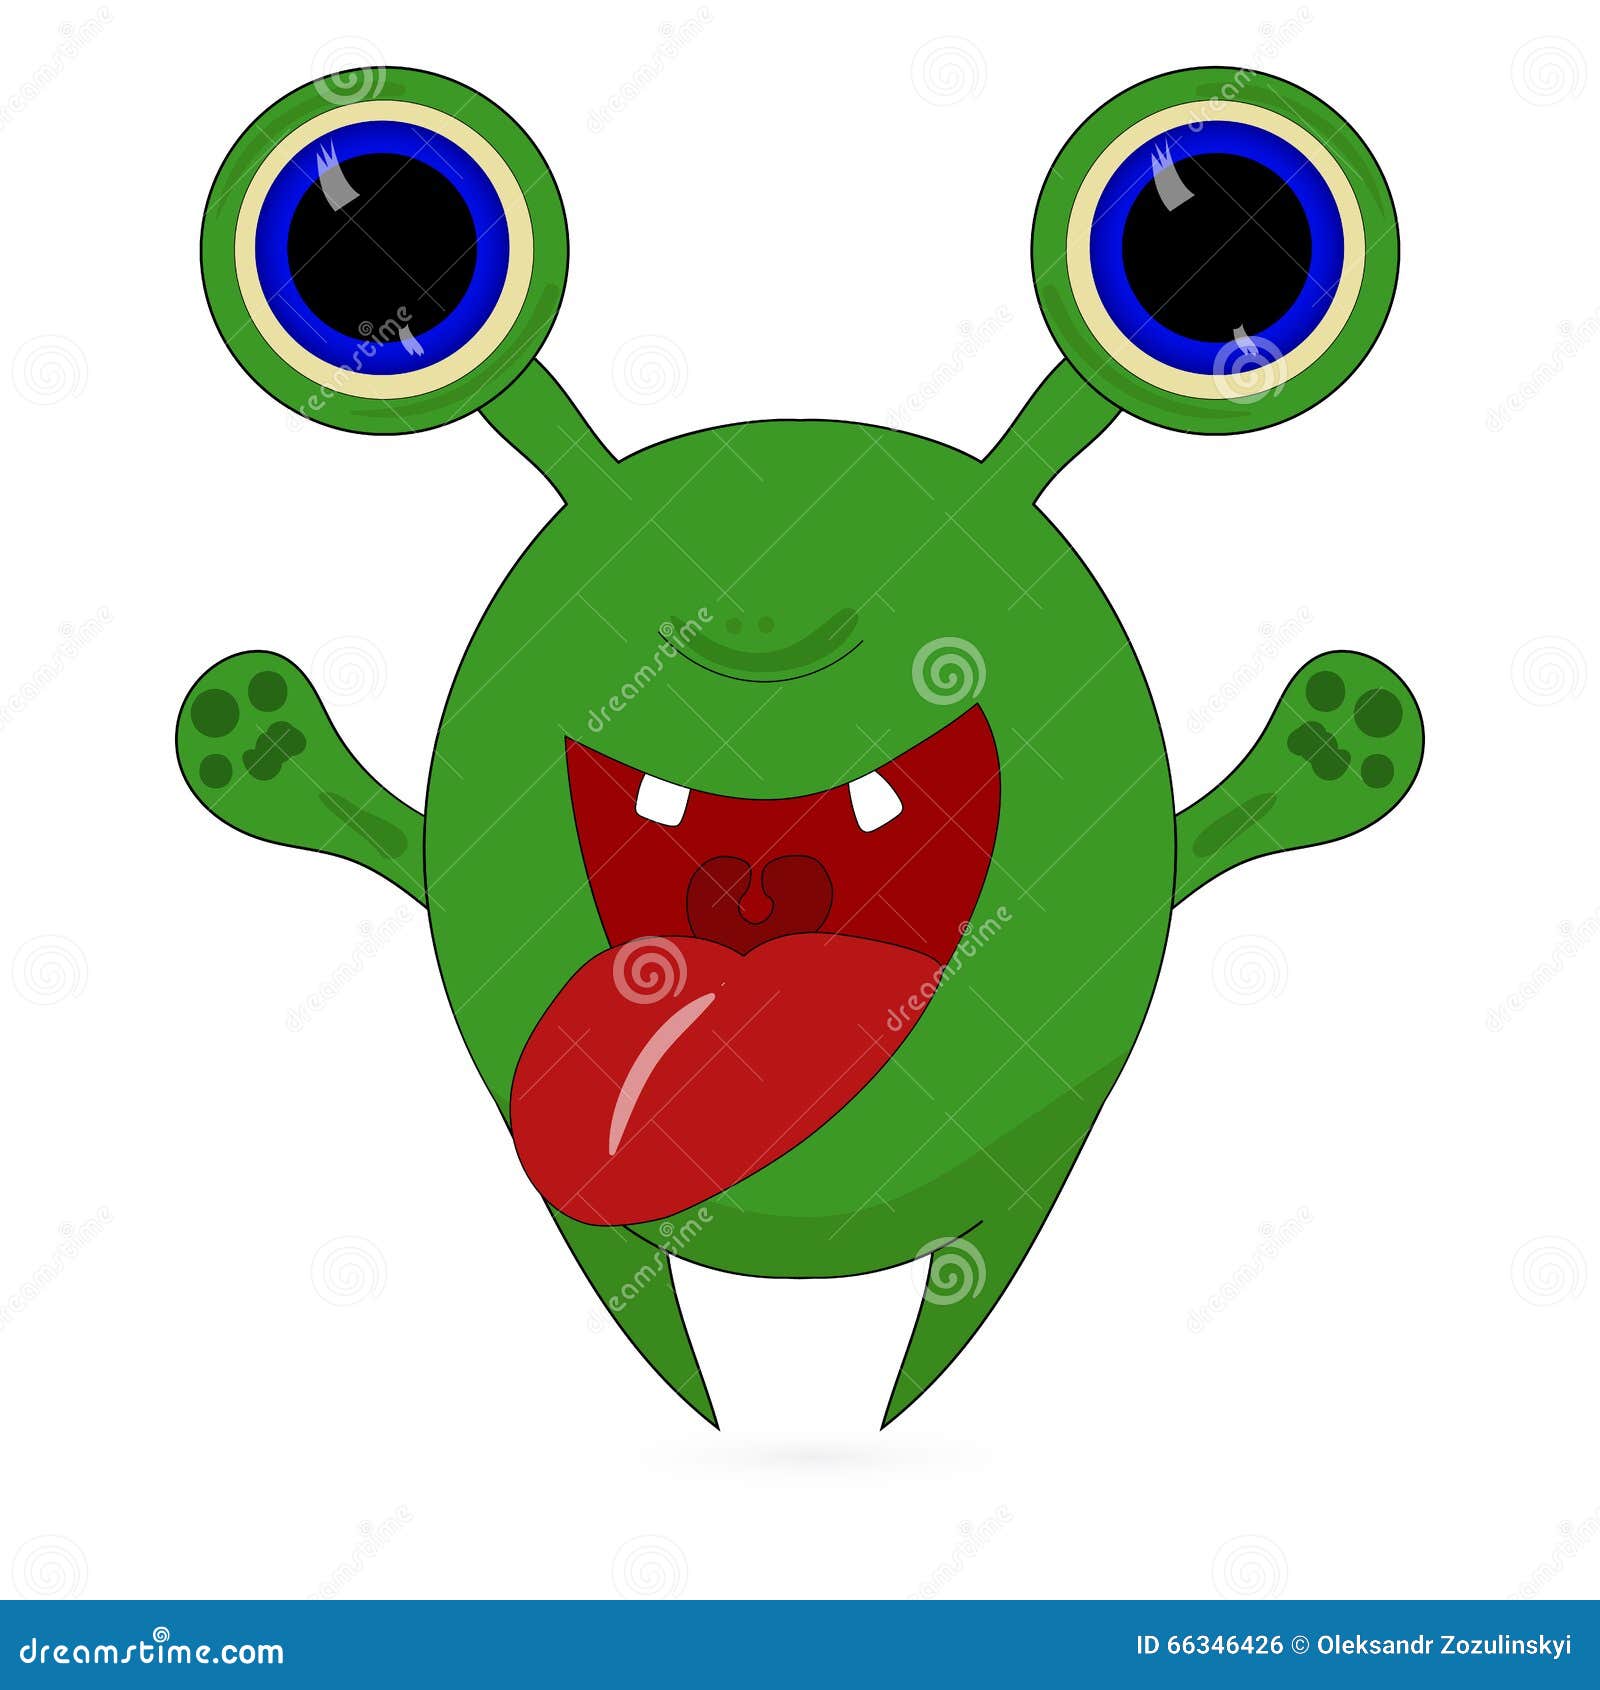 Personagem de desenho animado de monstro alienígena roxo peludo